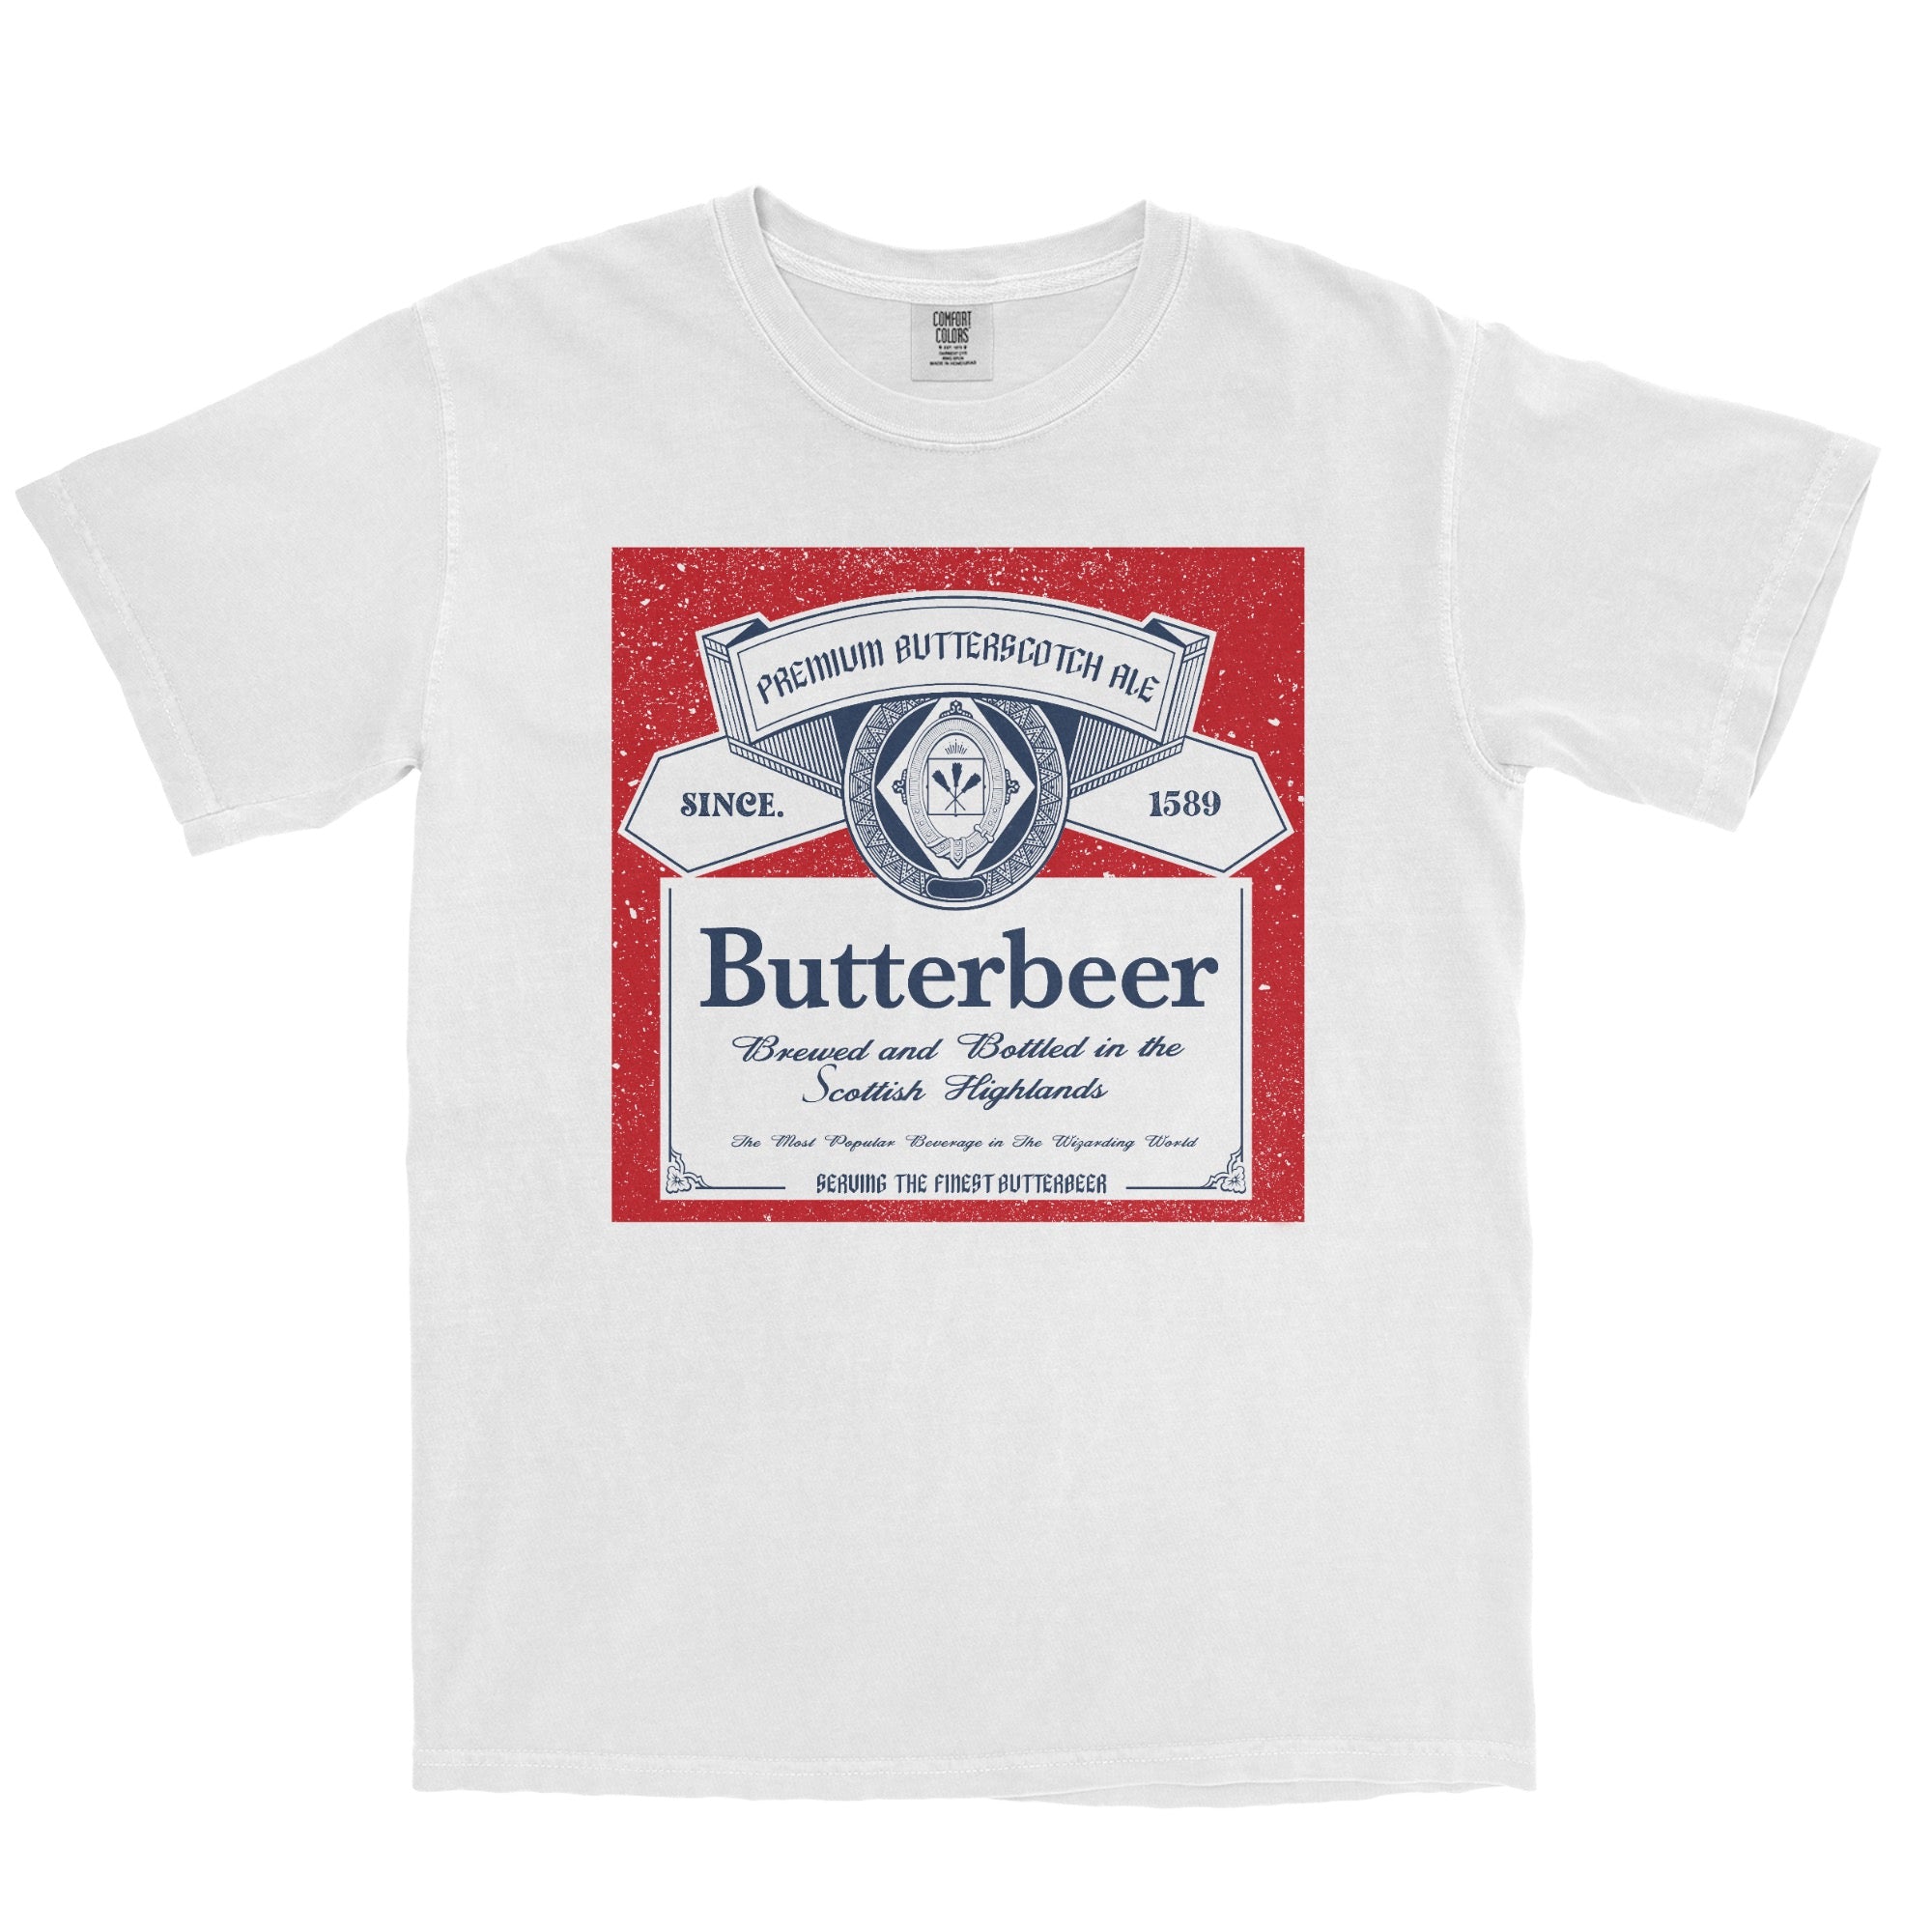 Vintage Butterbeer Garment Dyed Tee